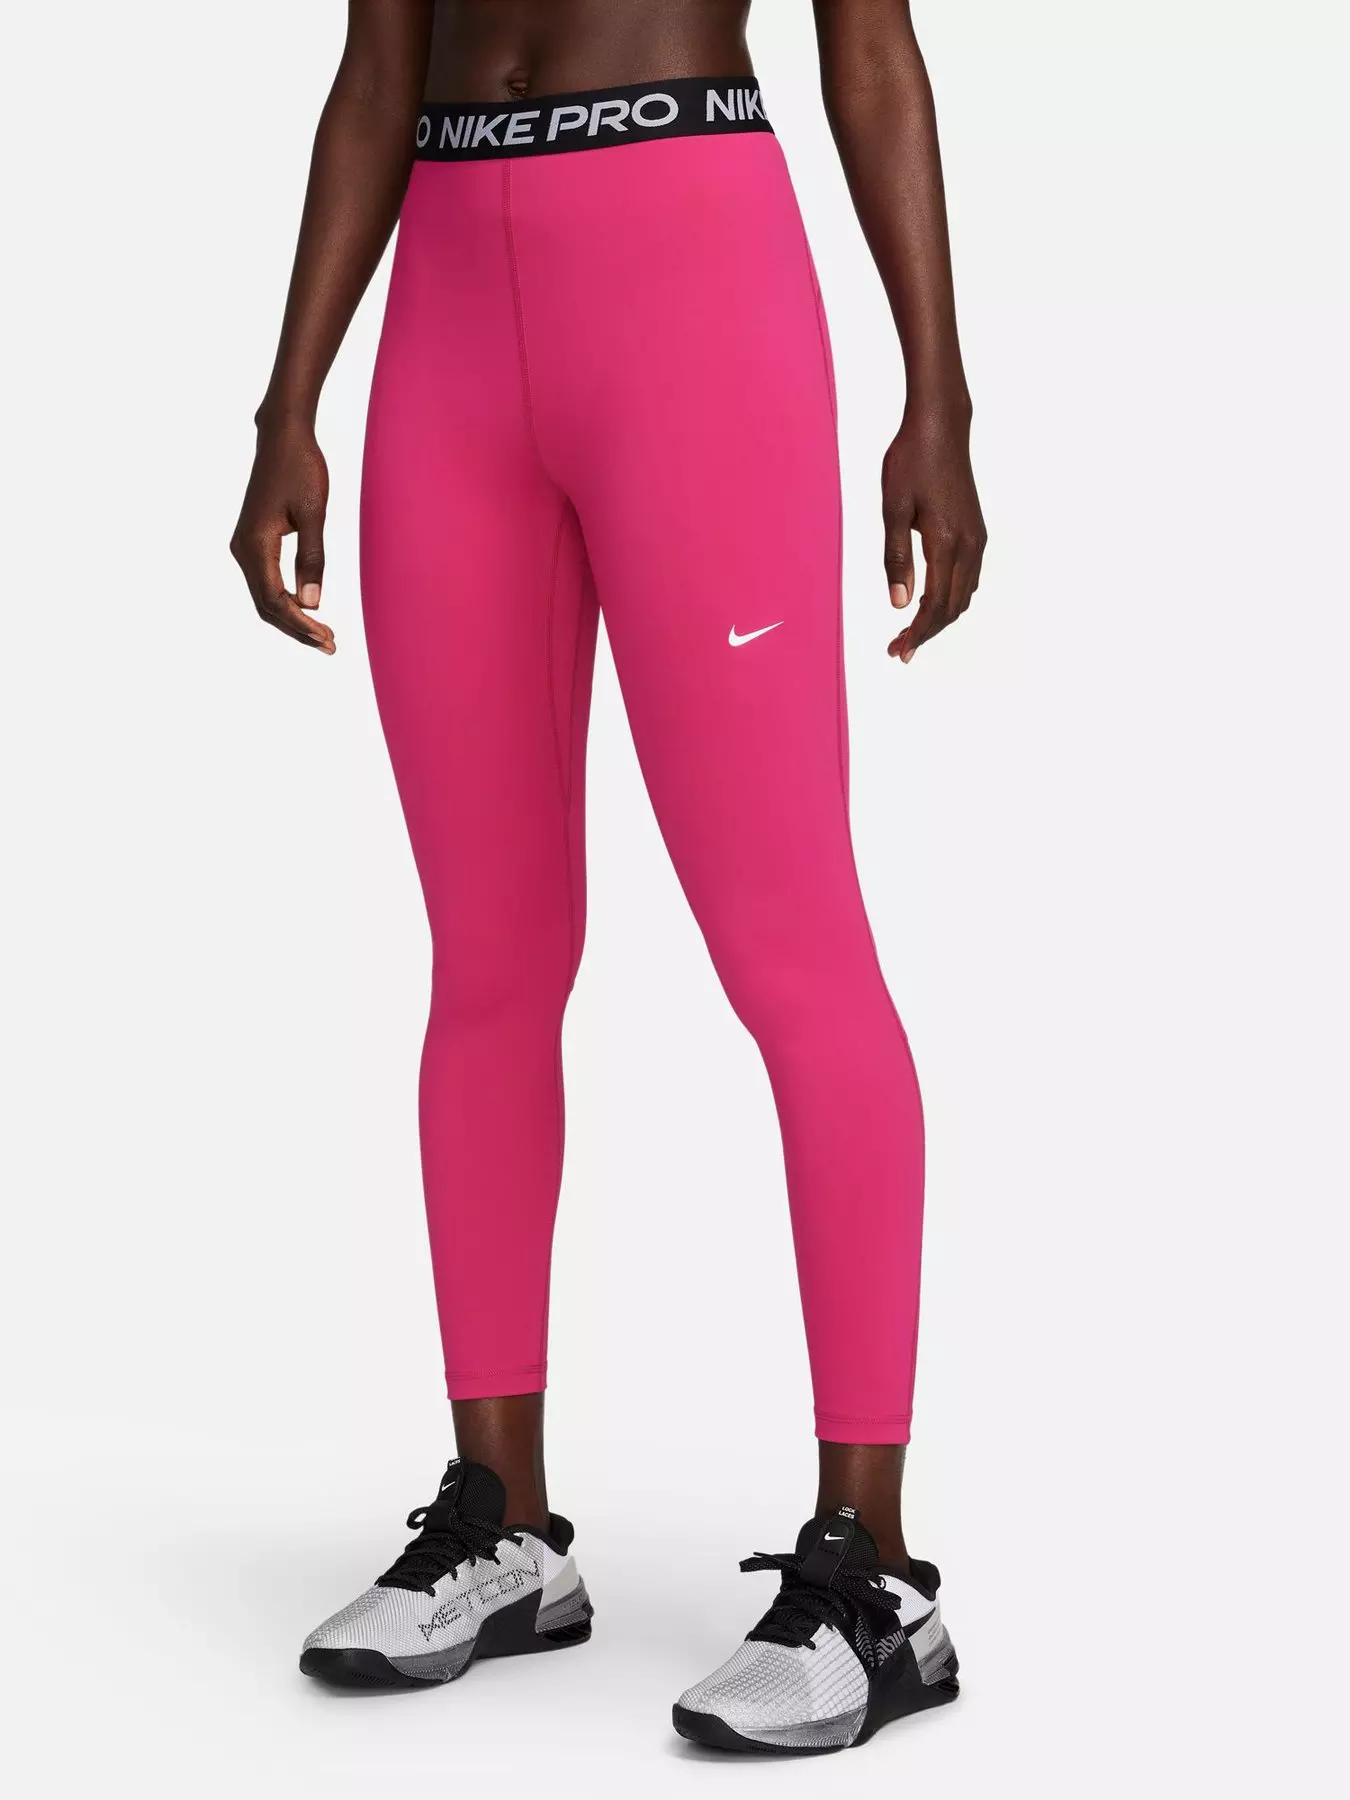 Nike Pro 365 Women's High-Waisted 7/8 Mesh Panel Leggings. UK